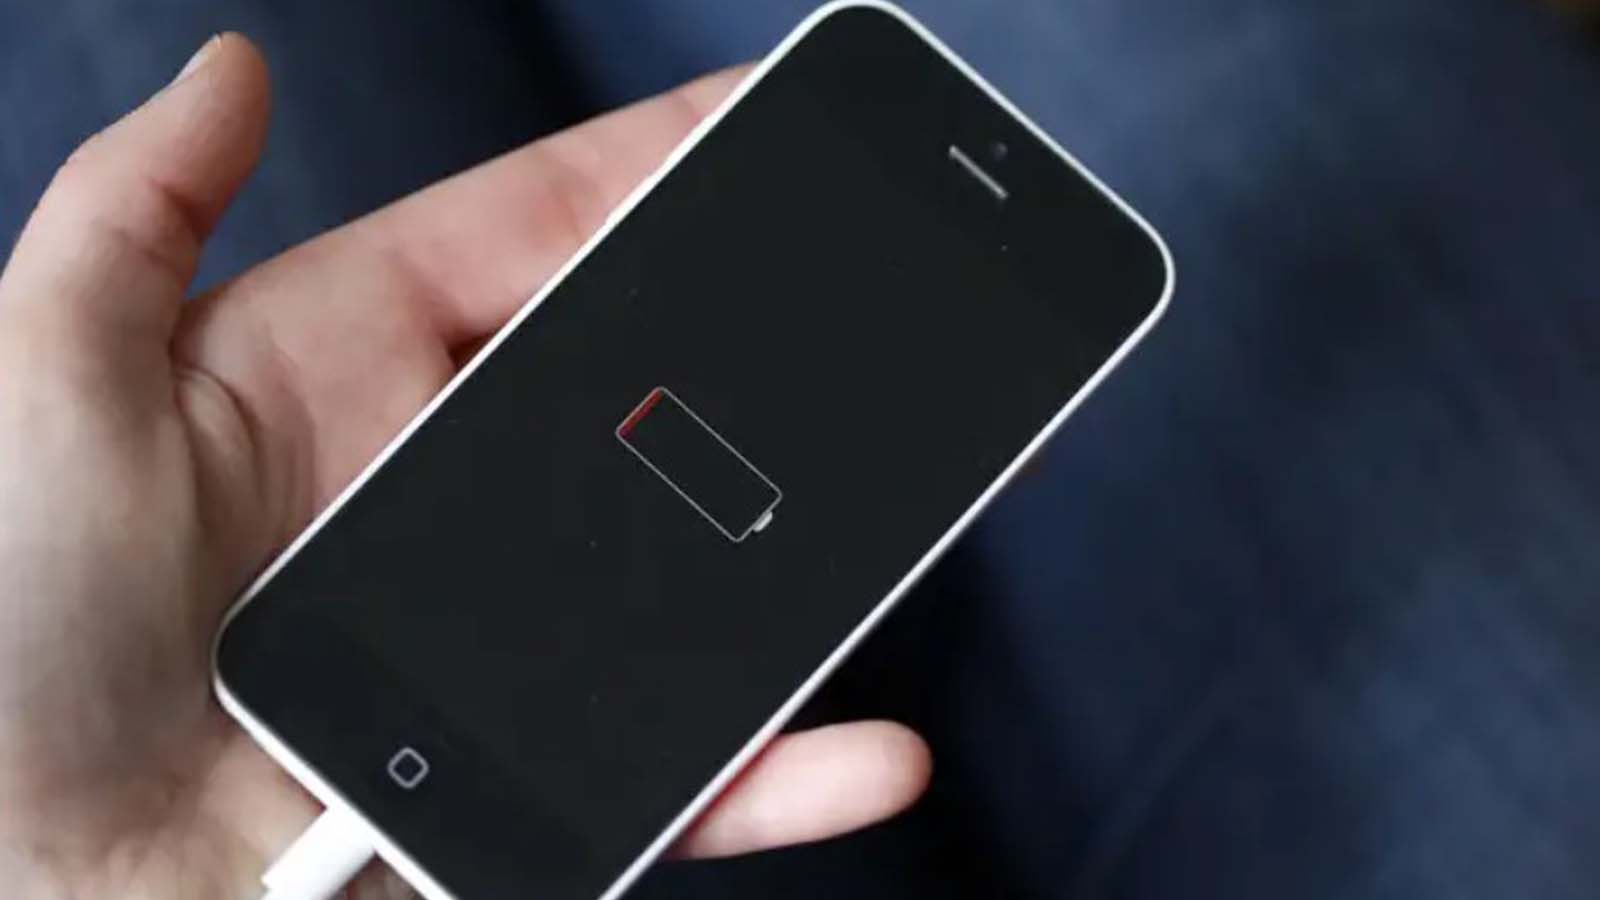 Le sfide tecnologiche dietro la batteria dell'iPhone